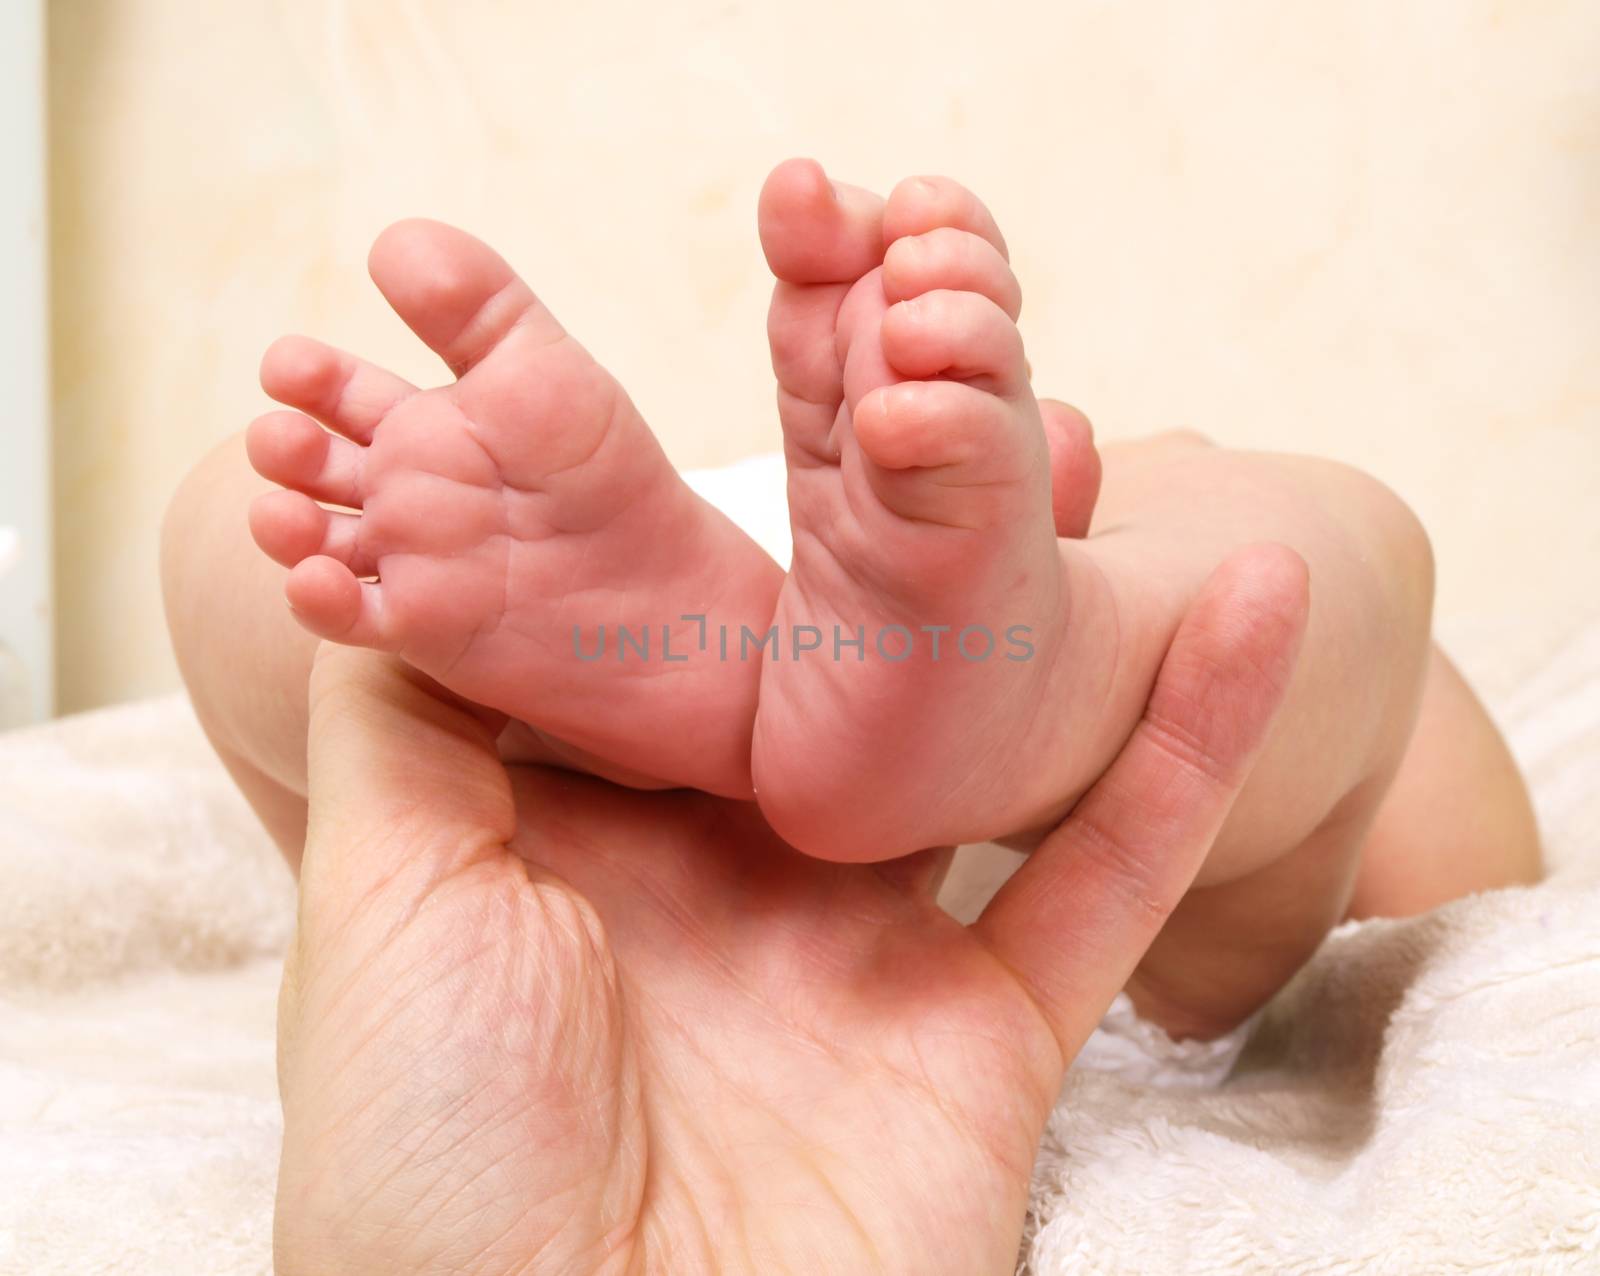 Newborn baby by Arvebettum